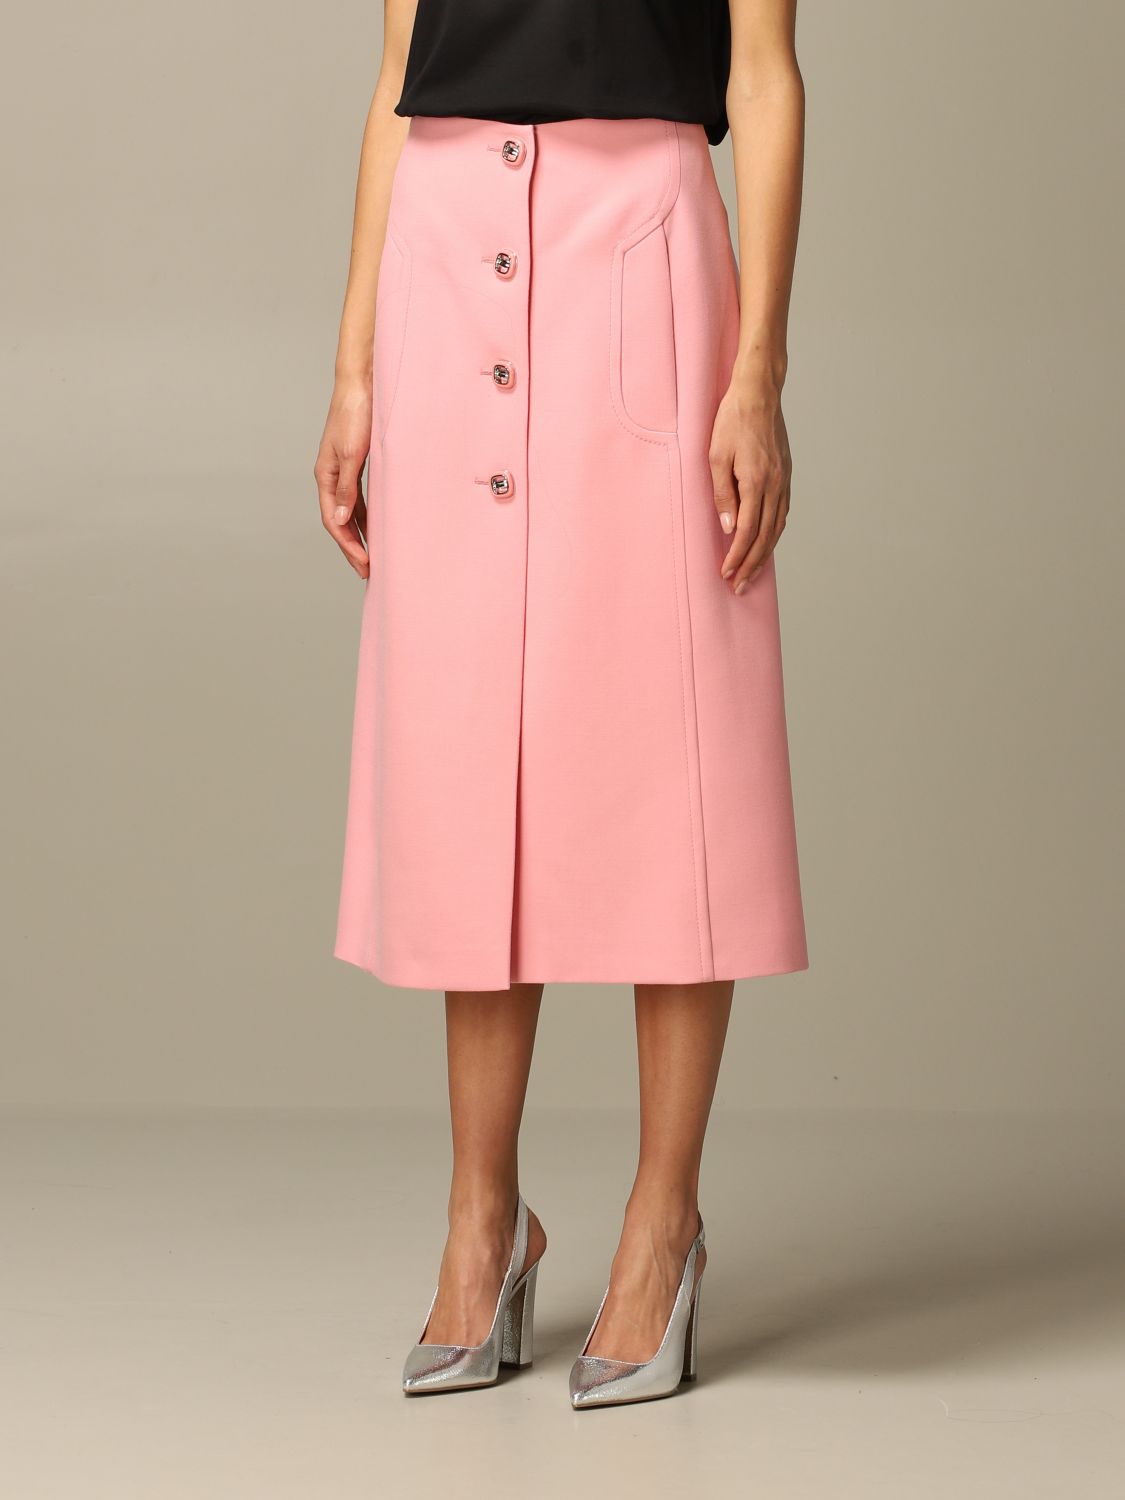 PRADA: virgin wool skirt with jewel buttons | Skirt Prada Women Pink ...